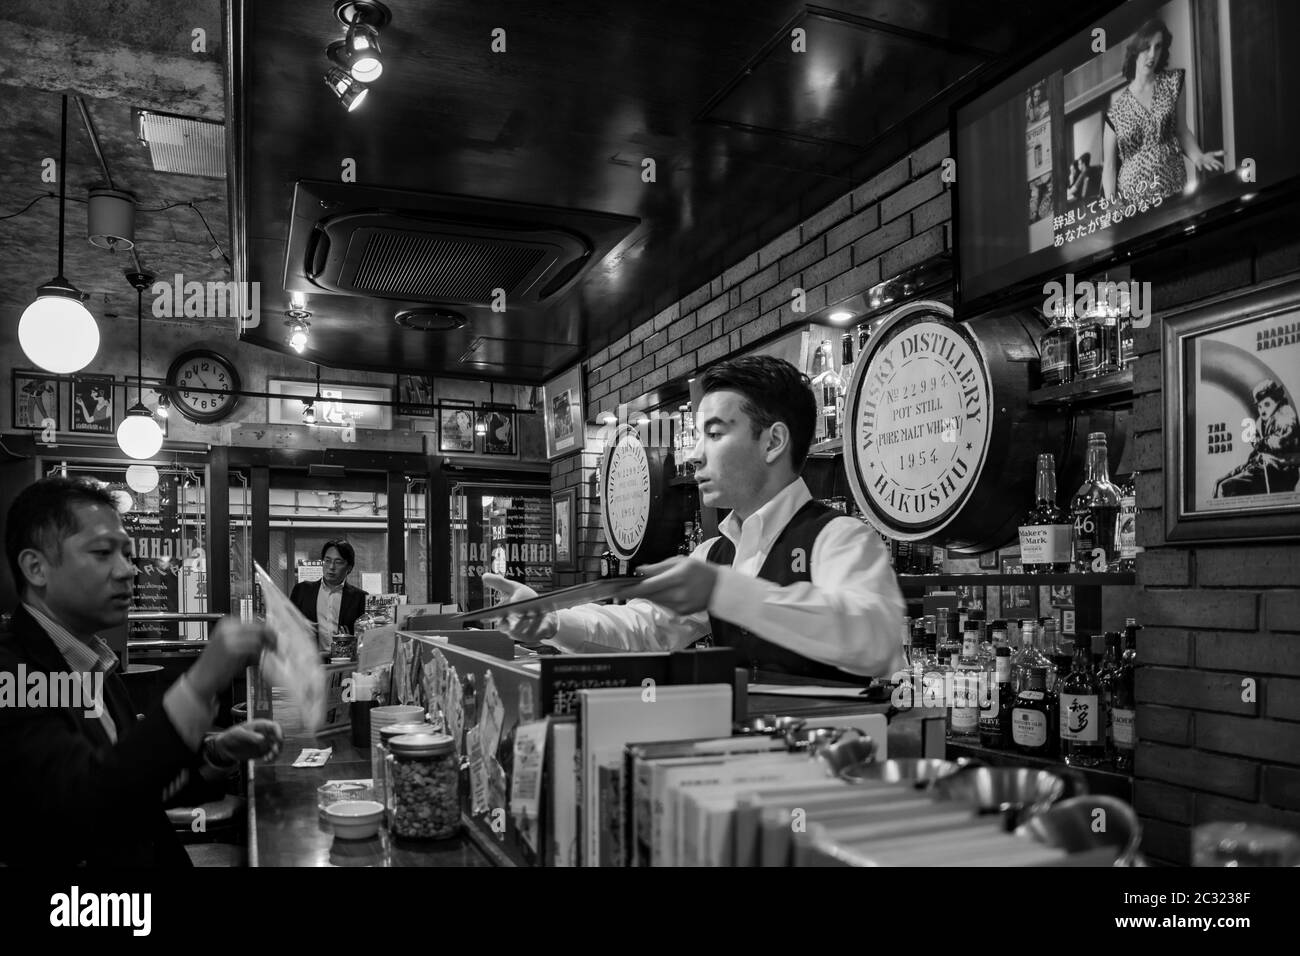 Das Innere einer Whisky-Bar serviert den bekannten Highball. Salarymen entspannende Momente nach dem Arbeitstag. Tokio, Japan. Stockfoto